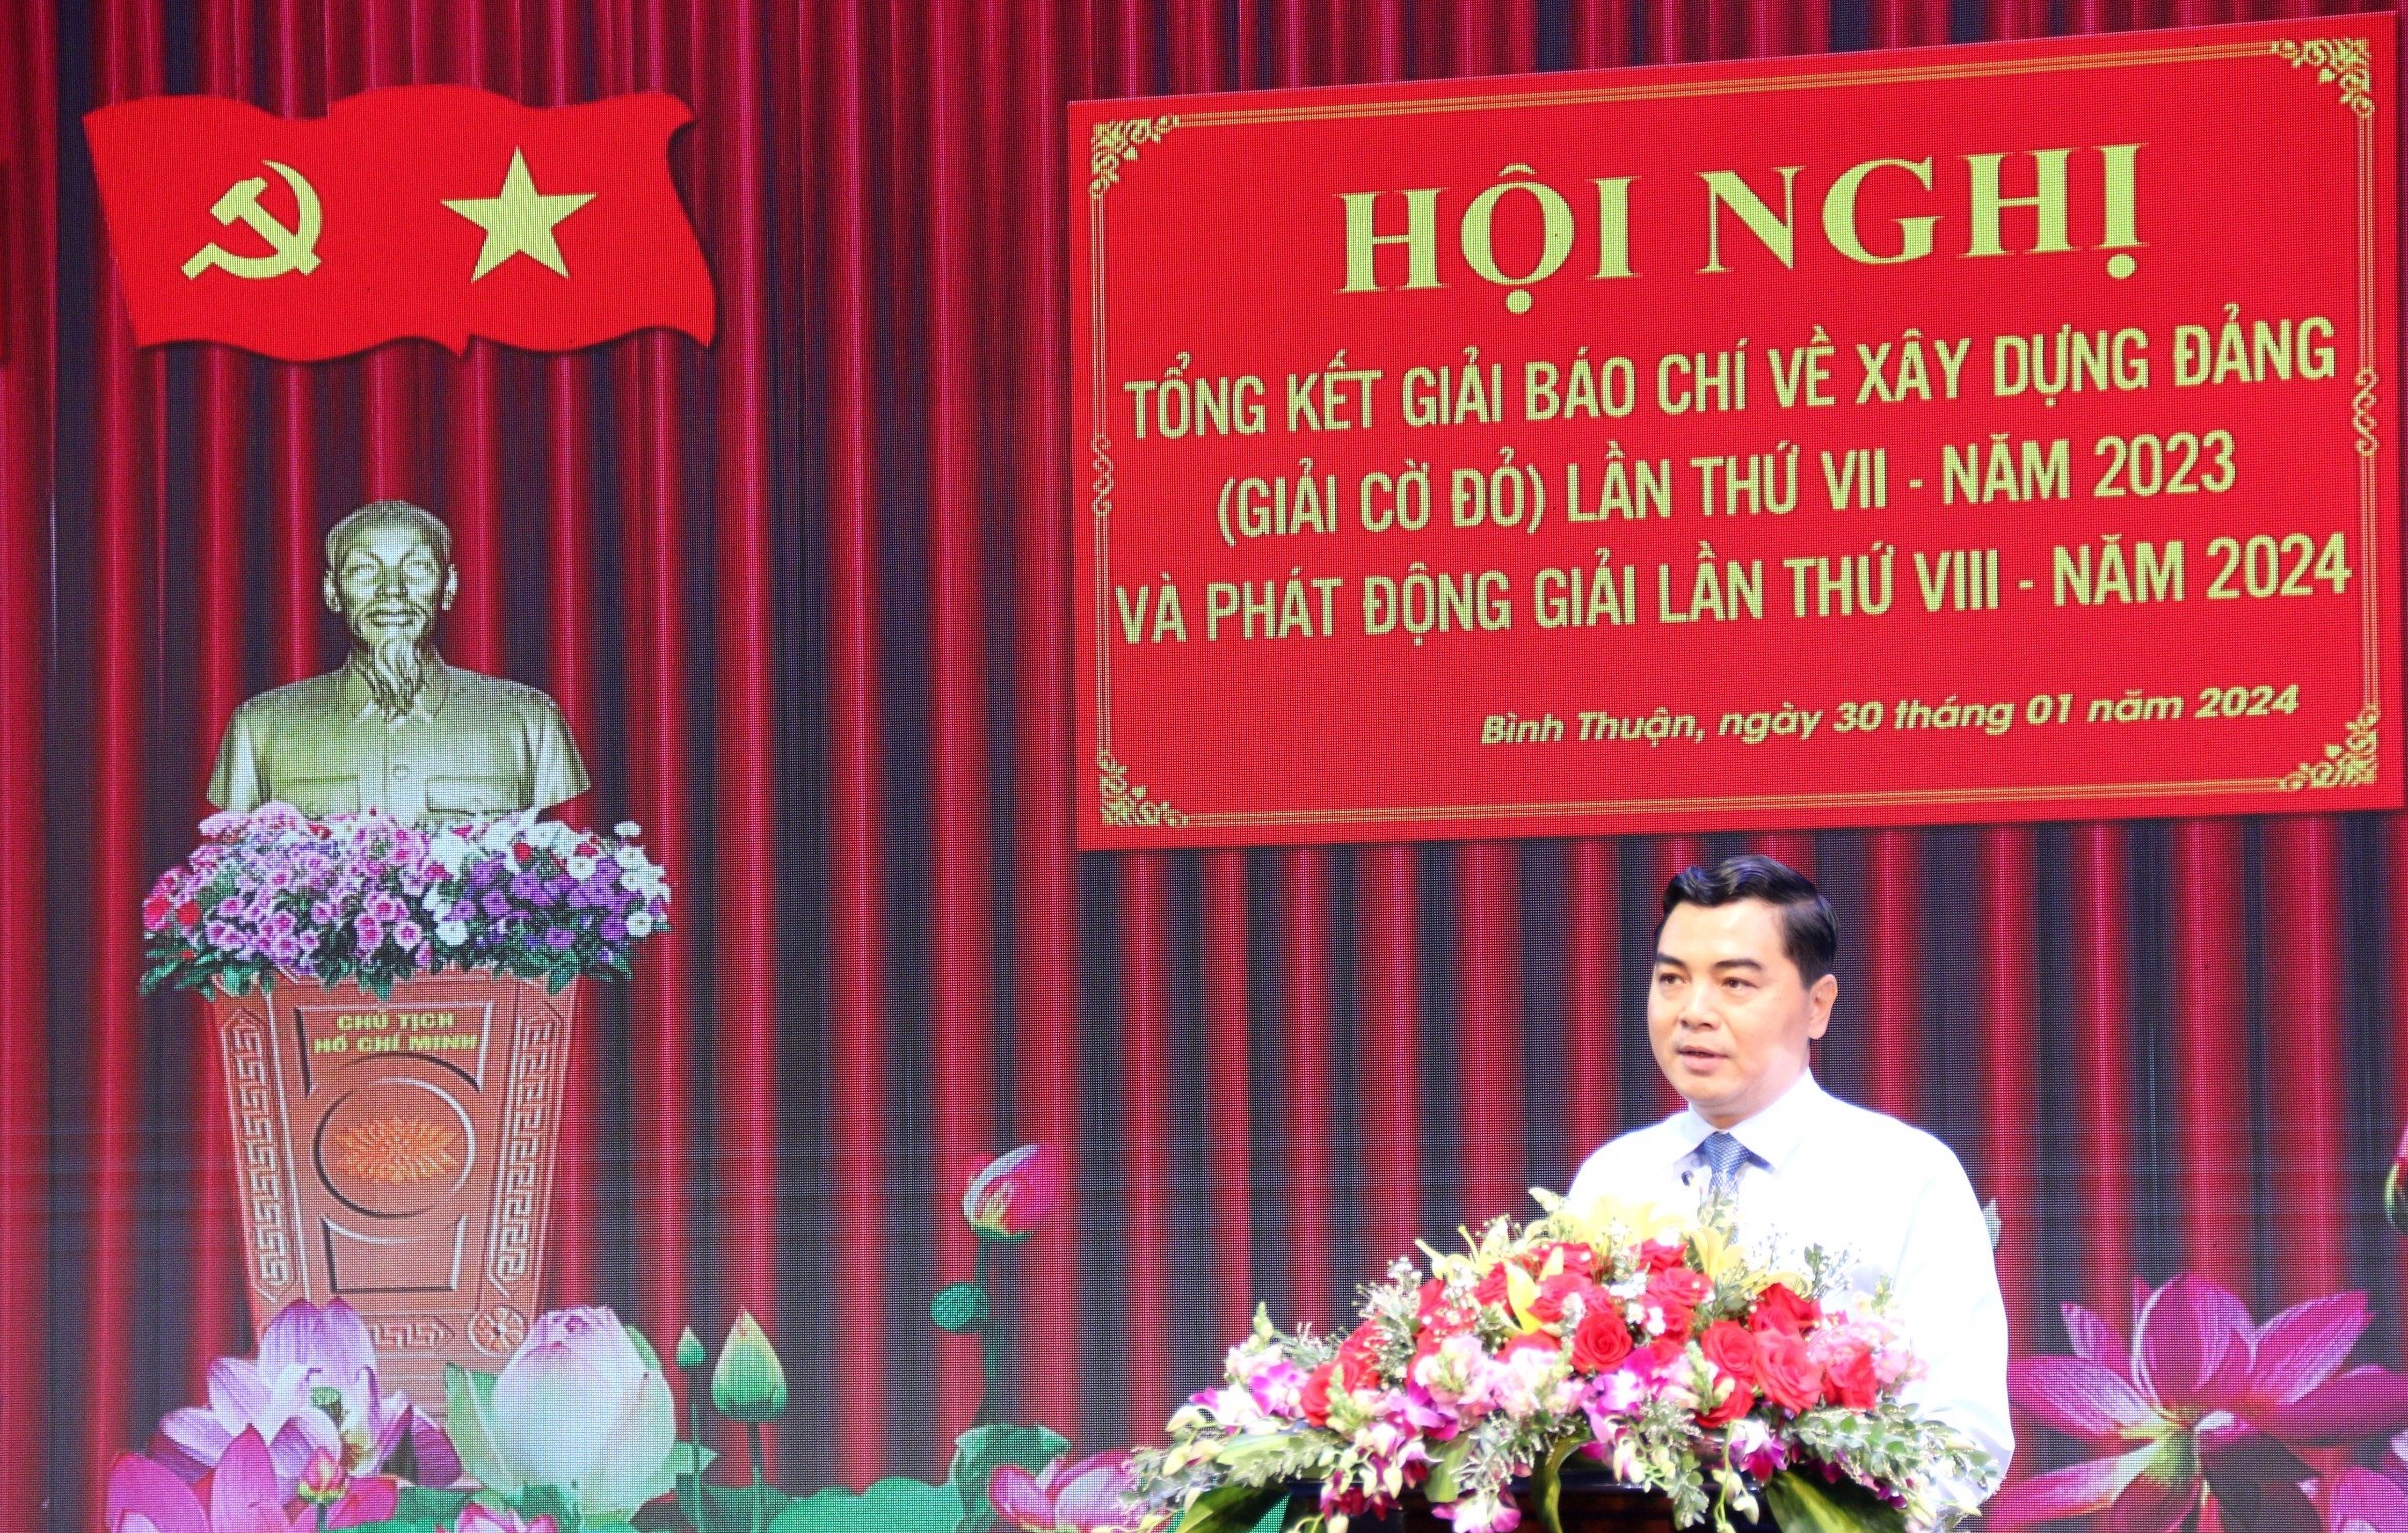 Báo Dân Việt đoạt Giải báo chí về xây dựng Đảng tỉnh Bình Thuận 2023- Ảnh 2.